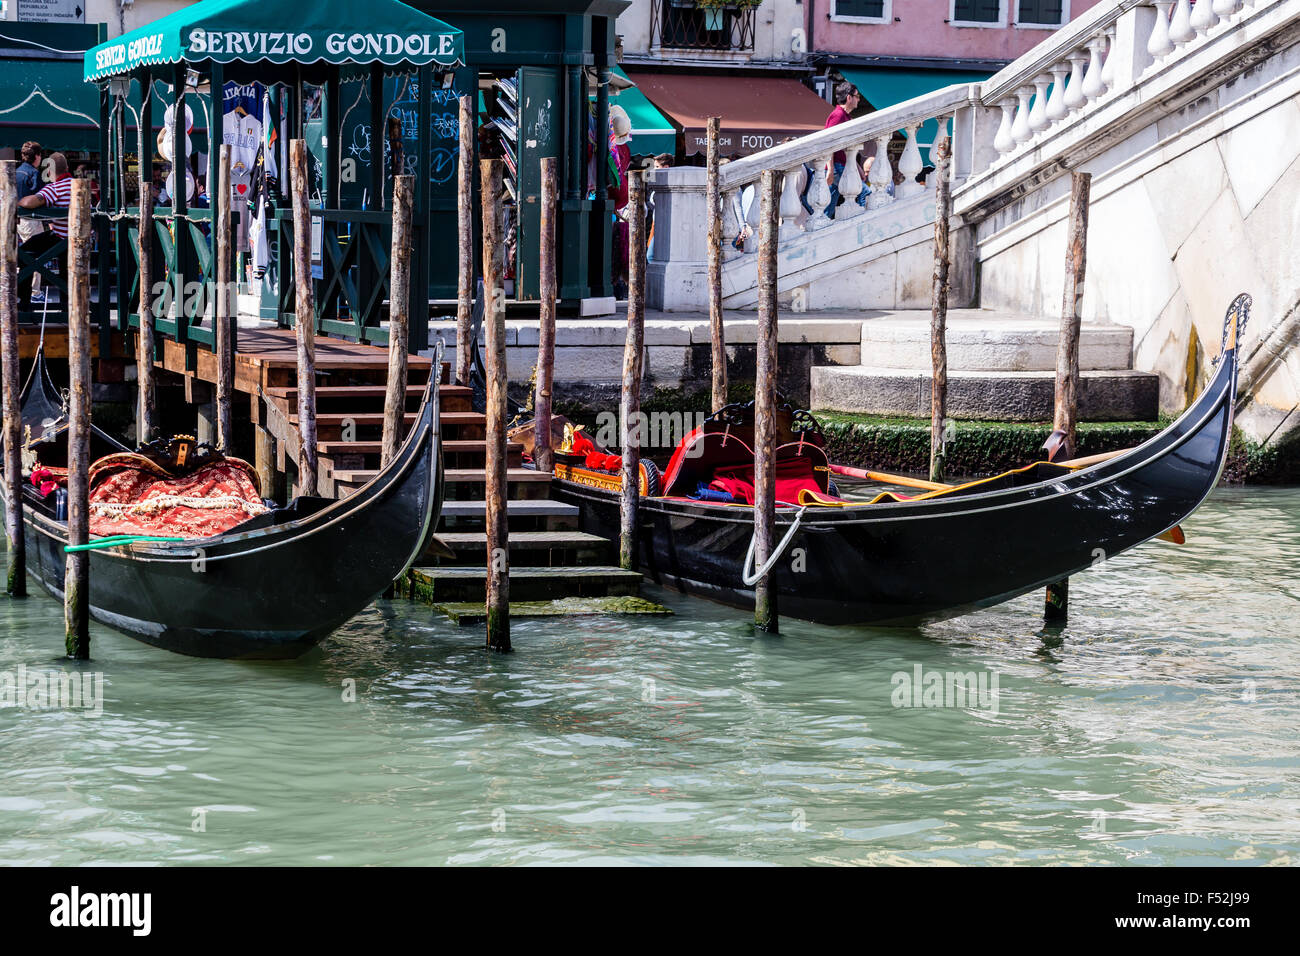 Service location gondole sur le canal à Venise Italie Banque D'Images